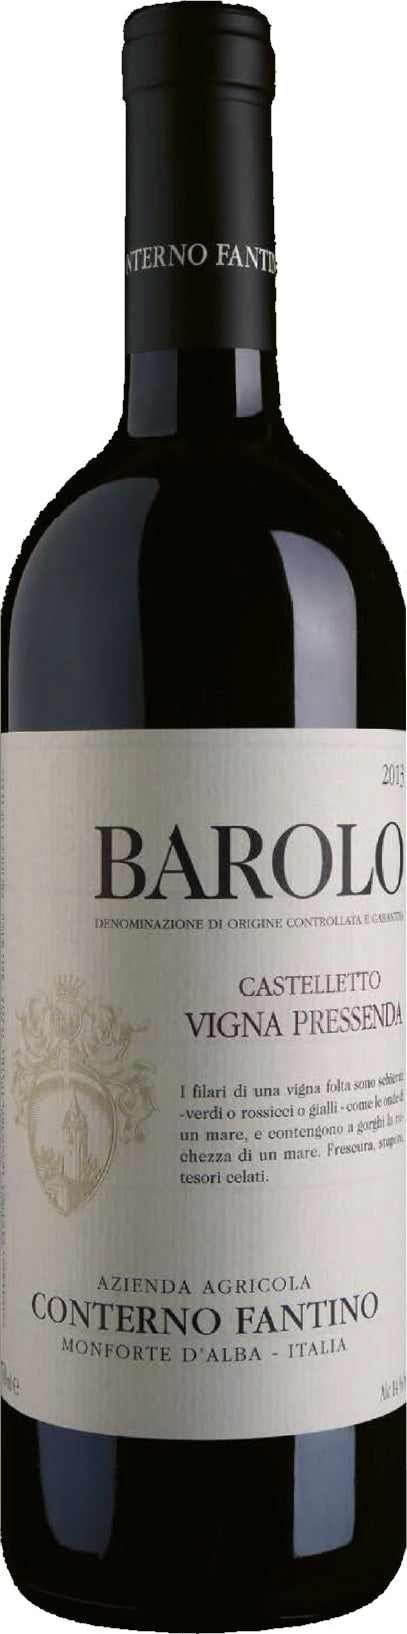 Conterno Fantino Barolo Castelletto Vigna Pressenda 2018 6x75cl - Just Wines 